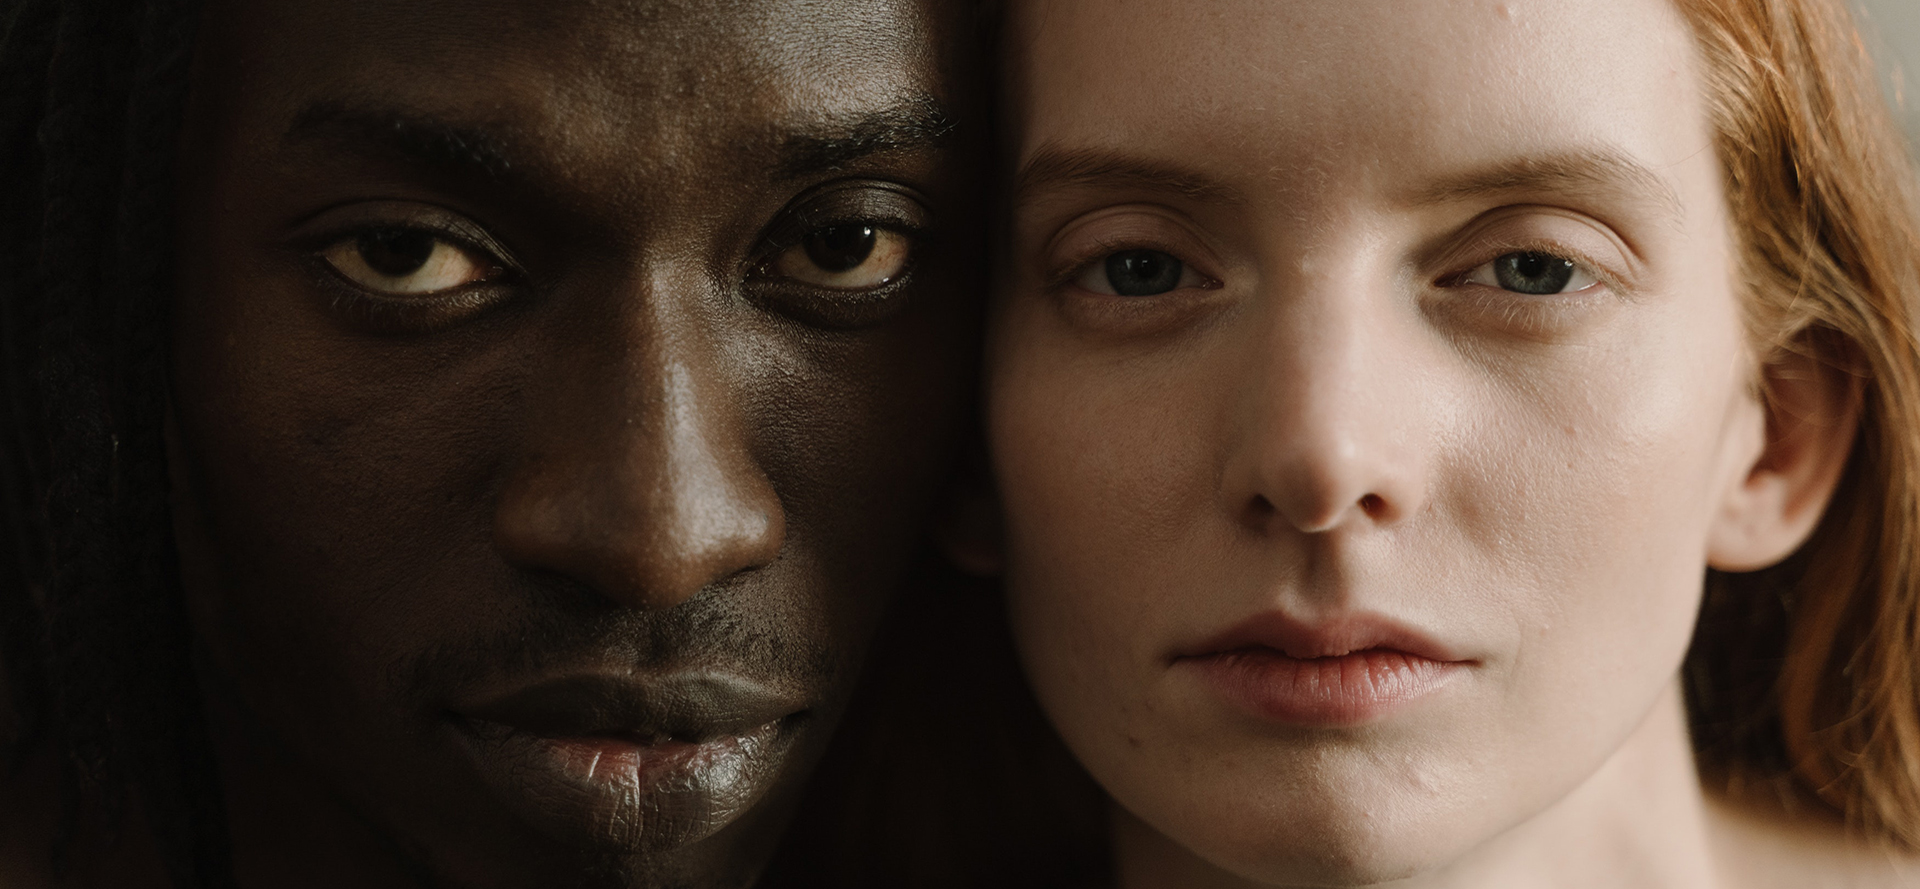 Ein Porträt von Angesicht zu Angesicht zwischen einem schwarzen Mann und einer weißen Frau.